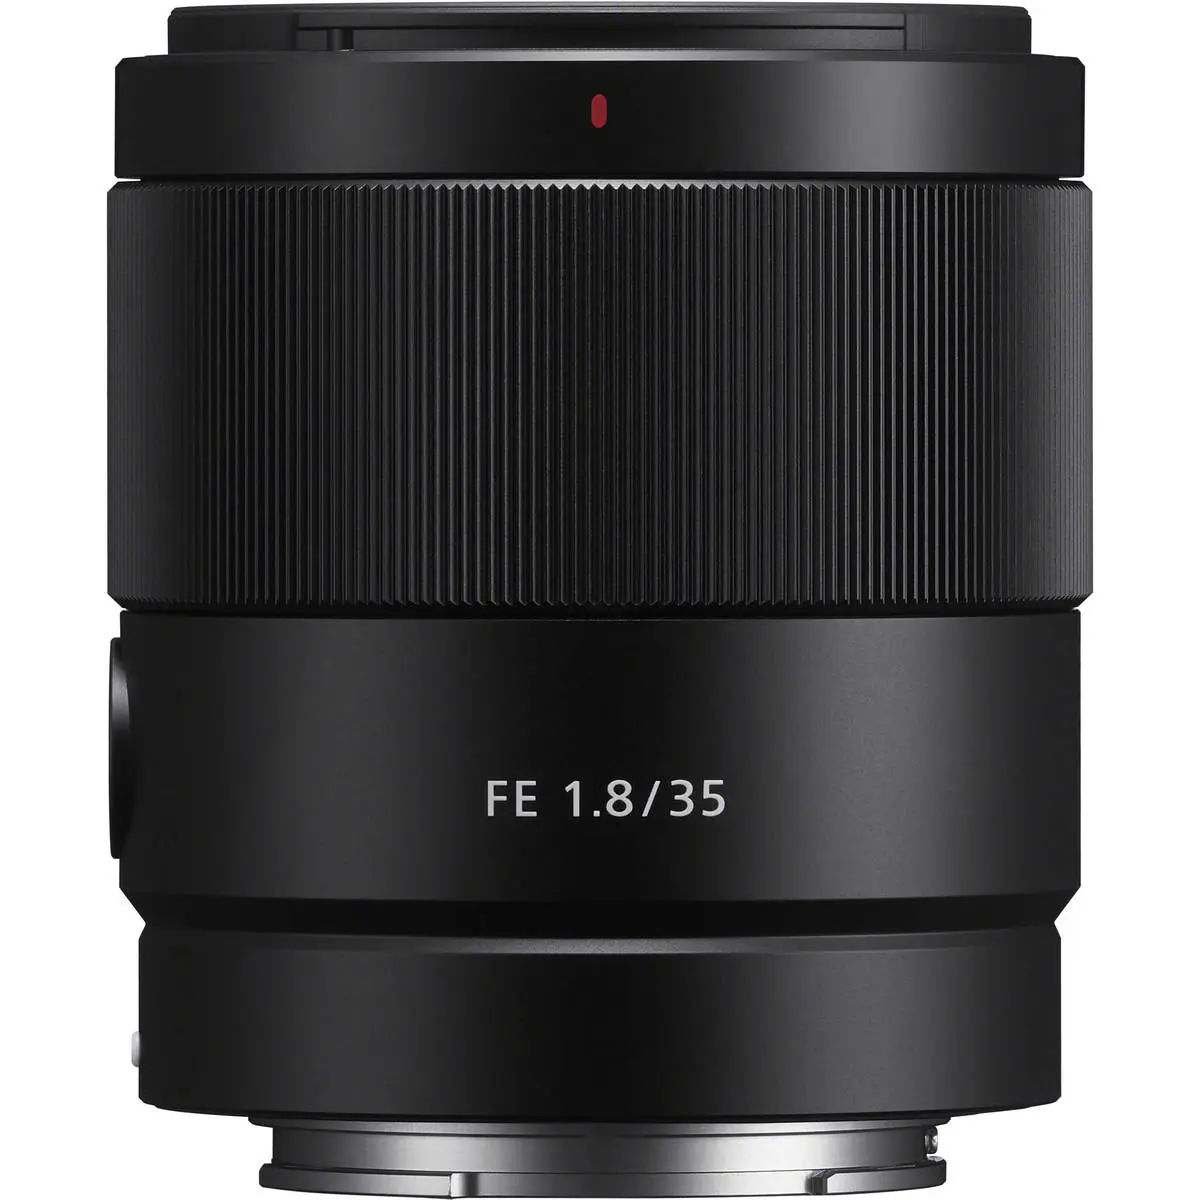 1. Sony FE 35mm F1.8 (Full Frame) Lens